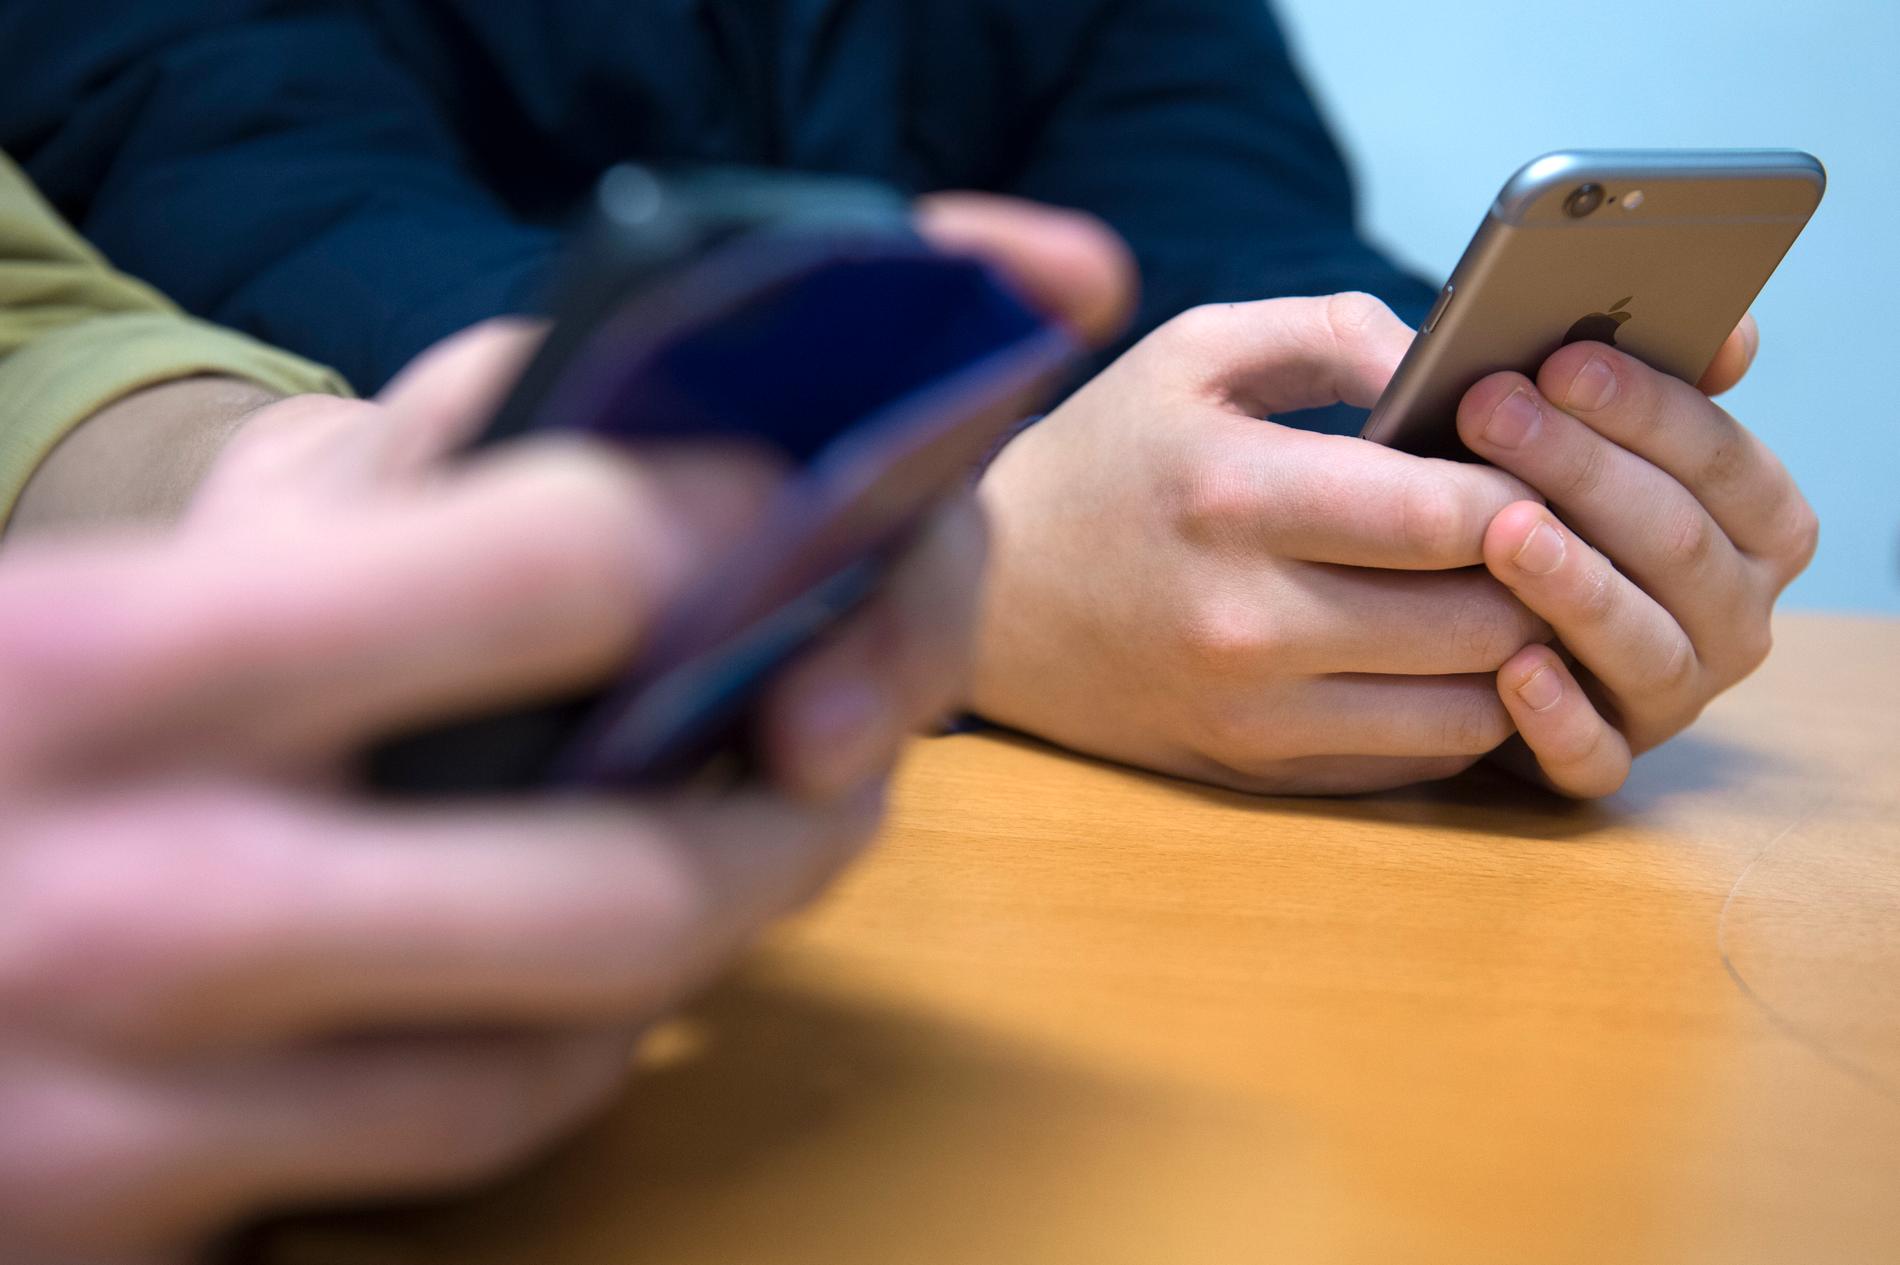 Unga löper hög risk att drabbas av konsumtionshets av sociala medier. 